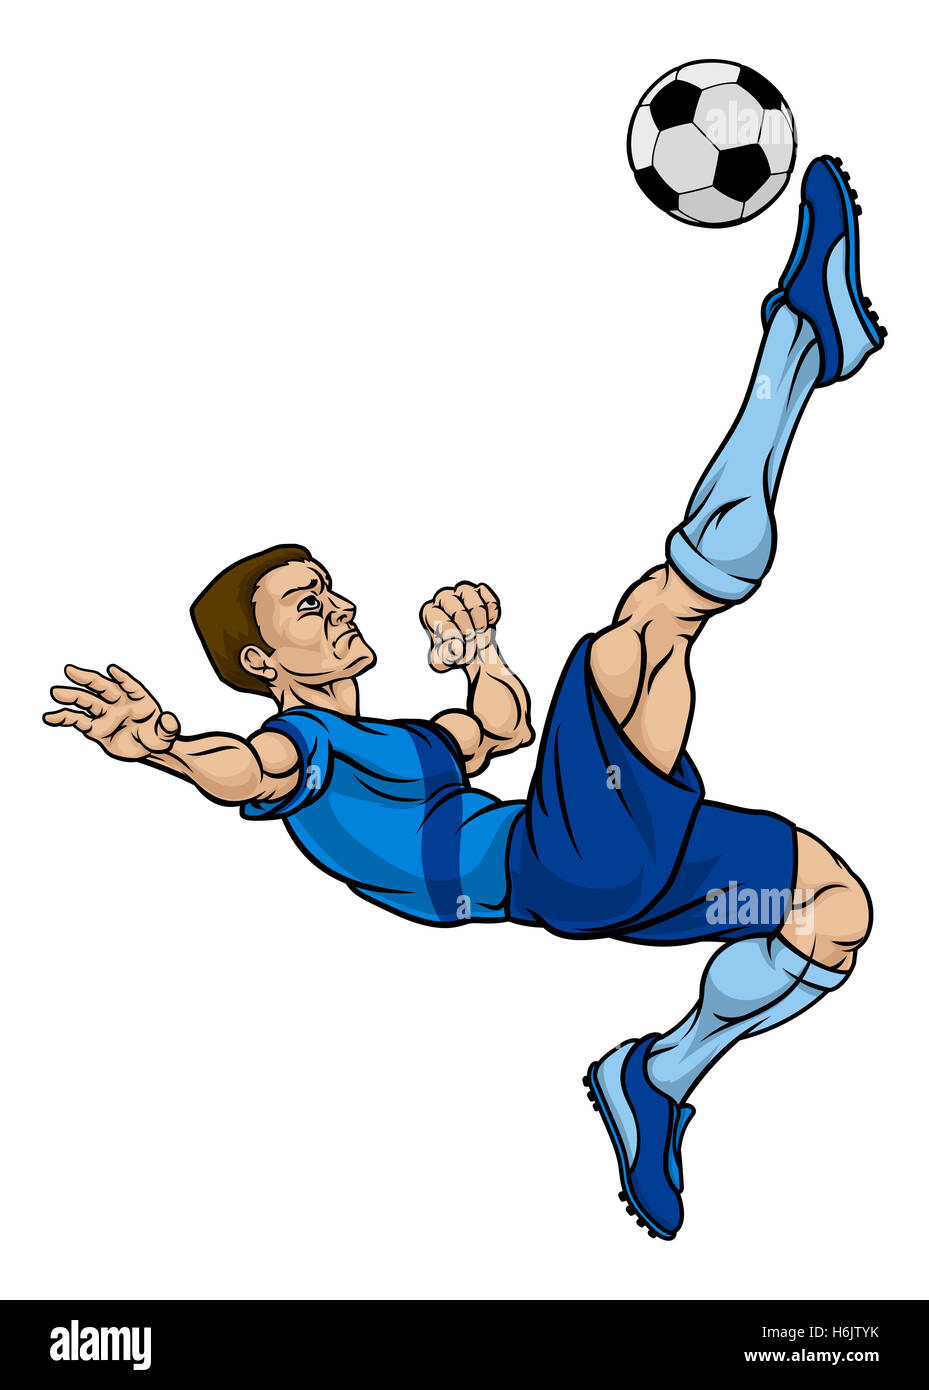 Una partita di football soccer player personaggio dei fumetti calciare la palla Foto Stock